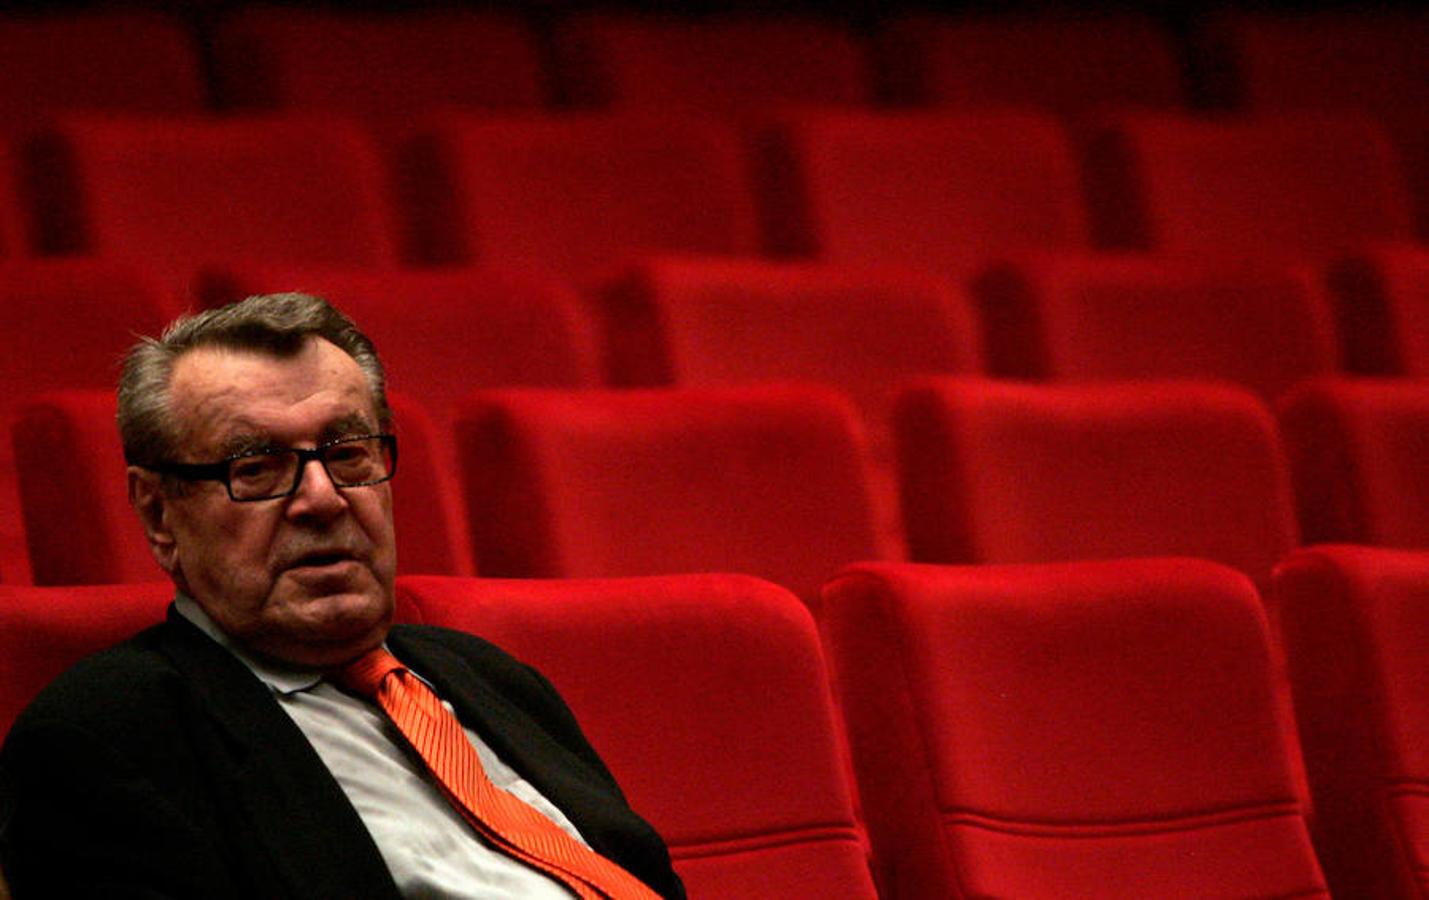 El director fallecido, en una imagen tomada en una sala de cine. 